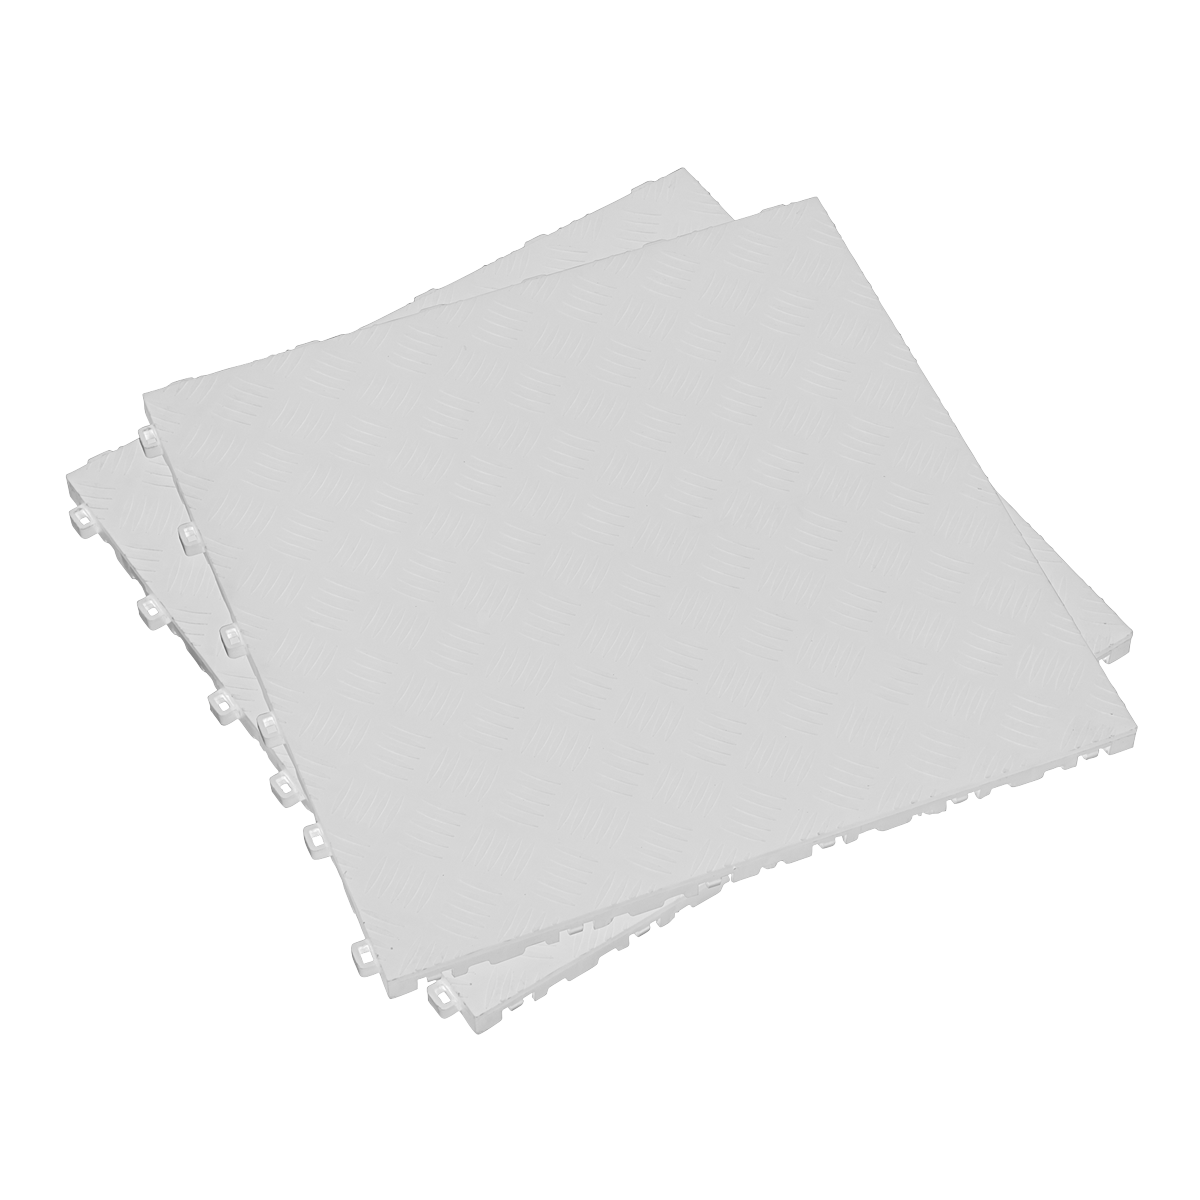 Sealey Polypropylene Floor Tile 400 x 400mm - White Treadplate - Pack of 9